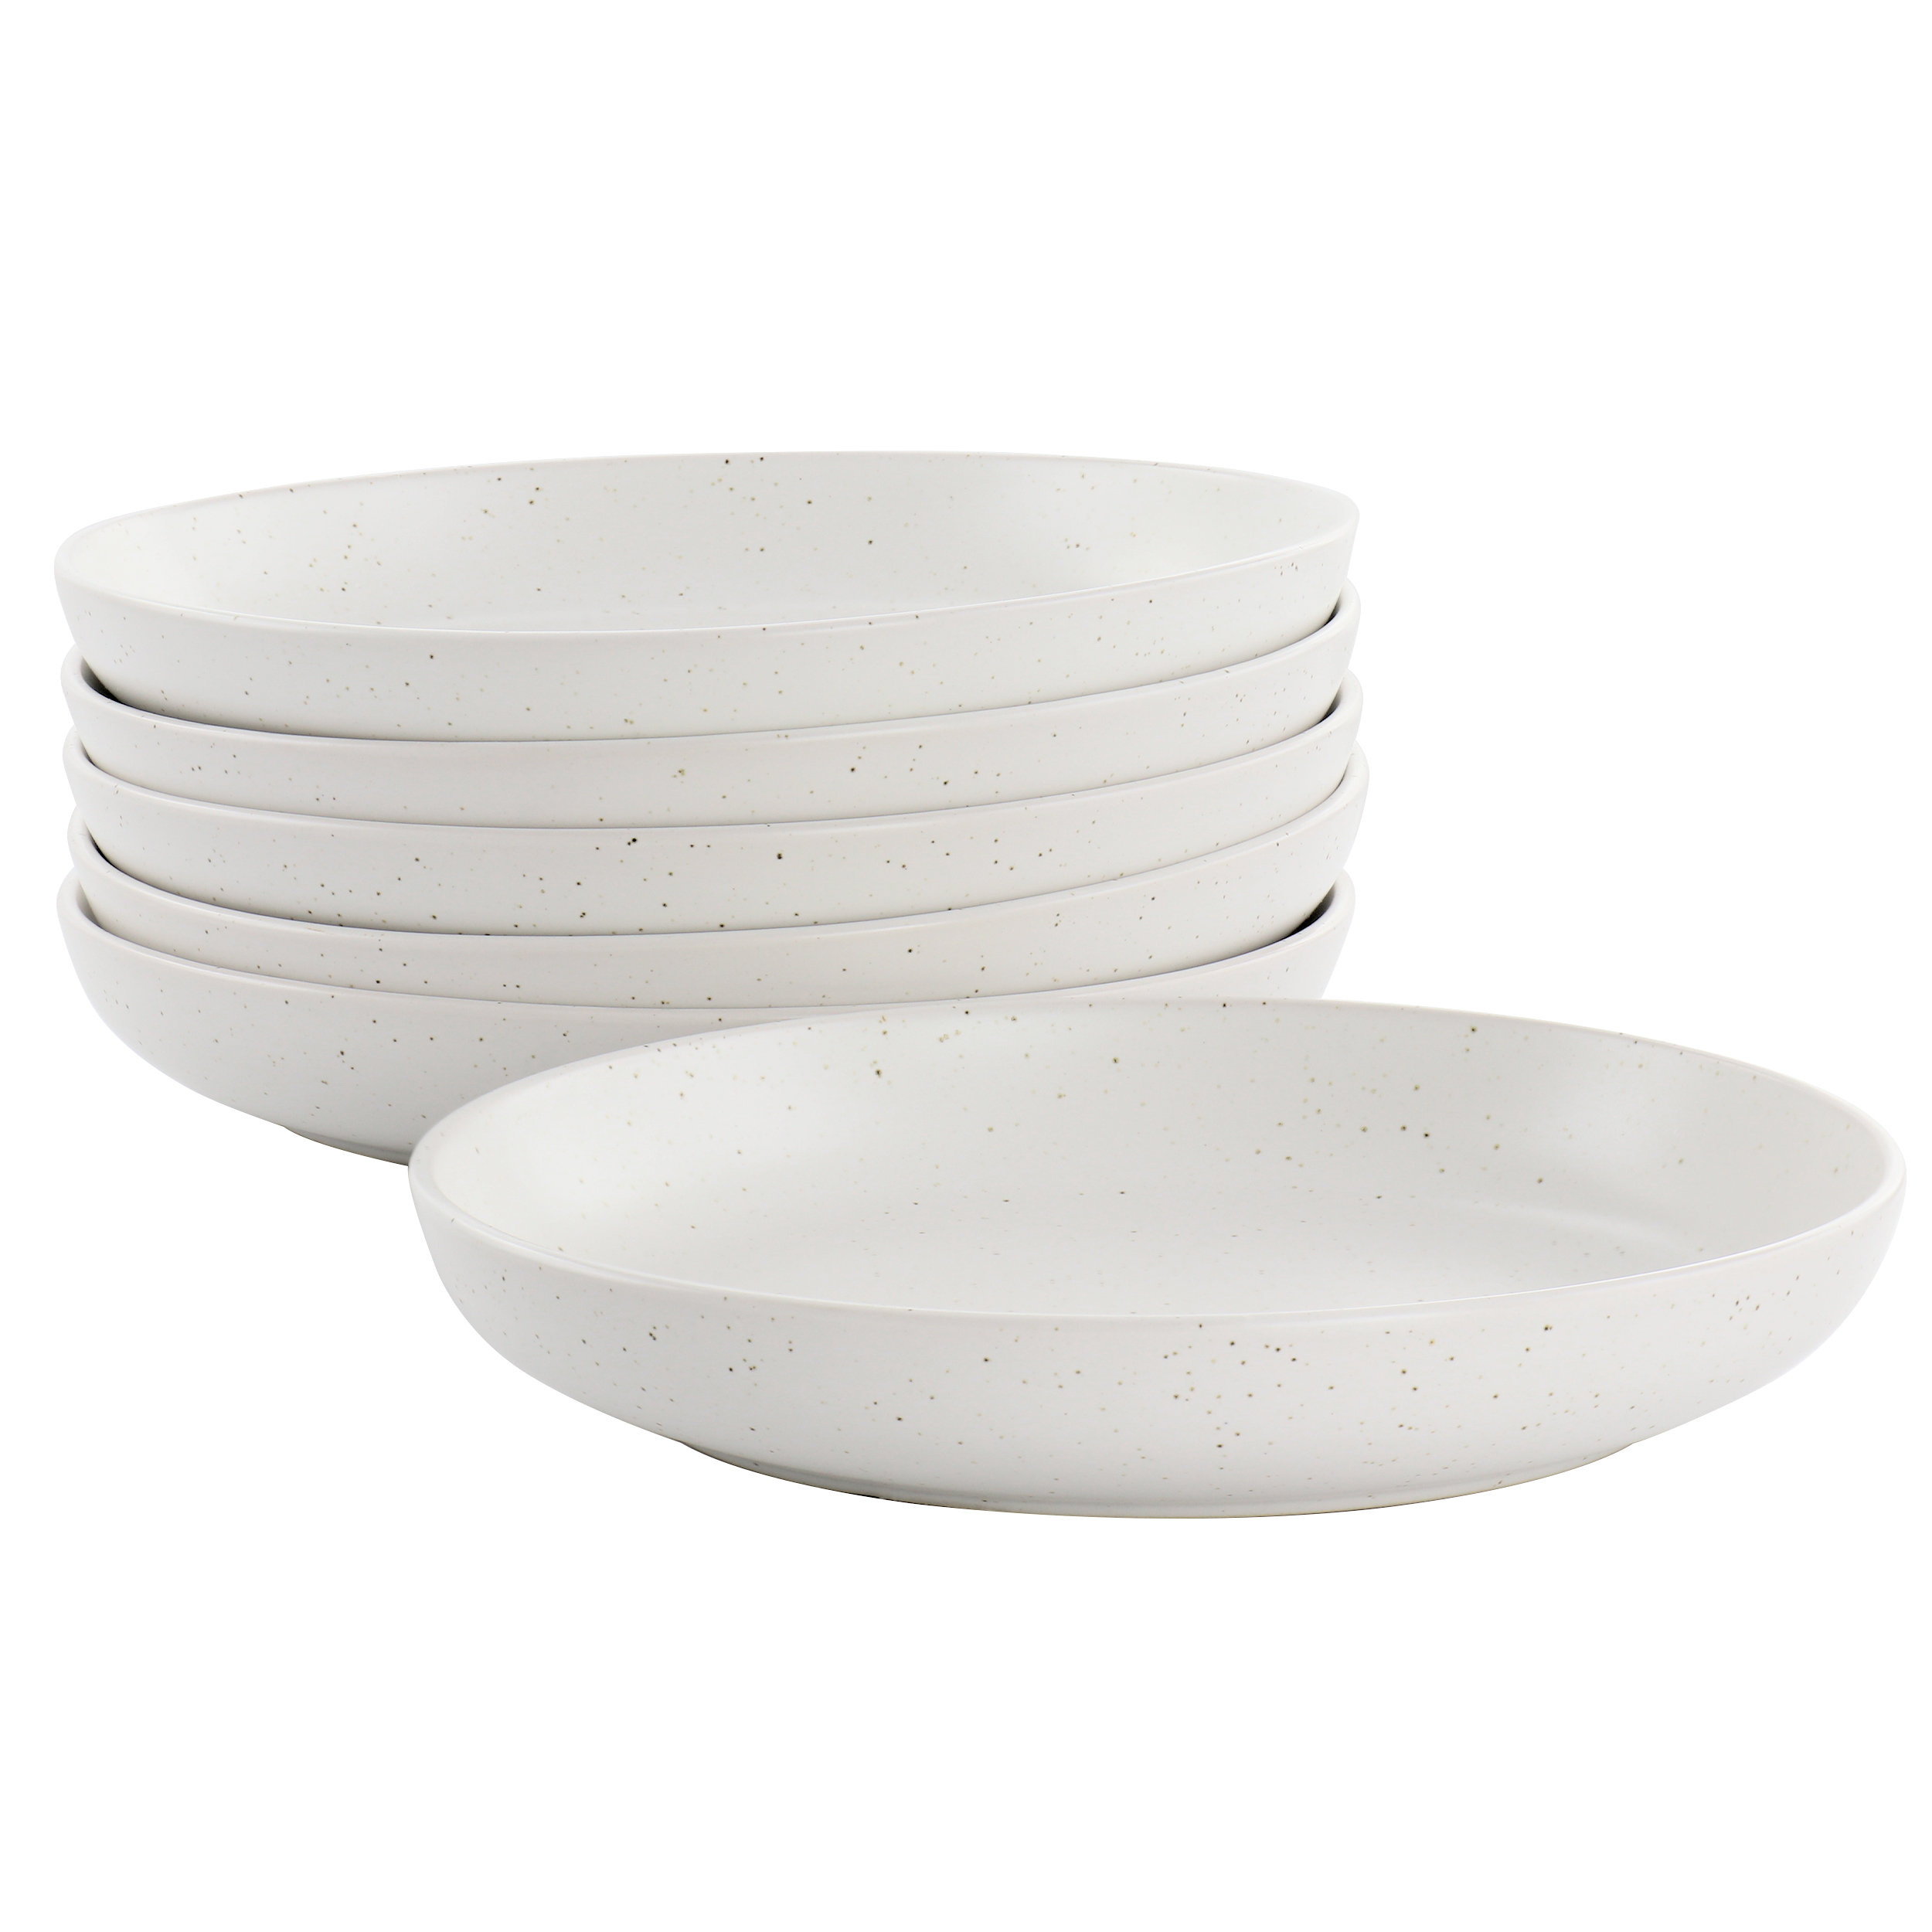 https://assets.wfcdn.com/im/92332182/compr-r85/2459/245979431/gibson-mio-6-piece-75-inch-round-stoneware-bowl-set-in-sea-salt.jpg